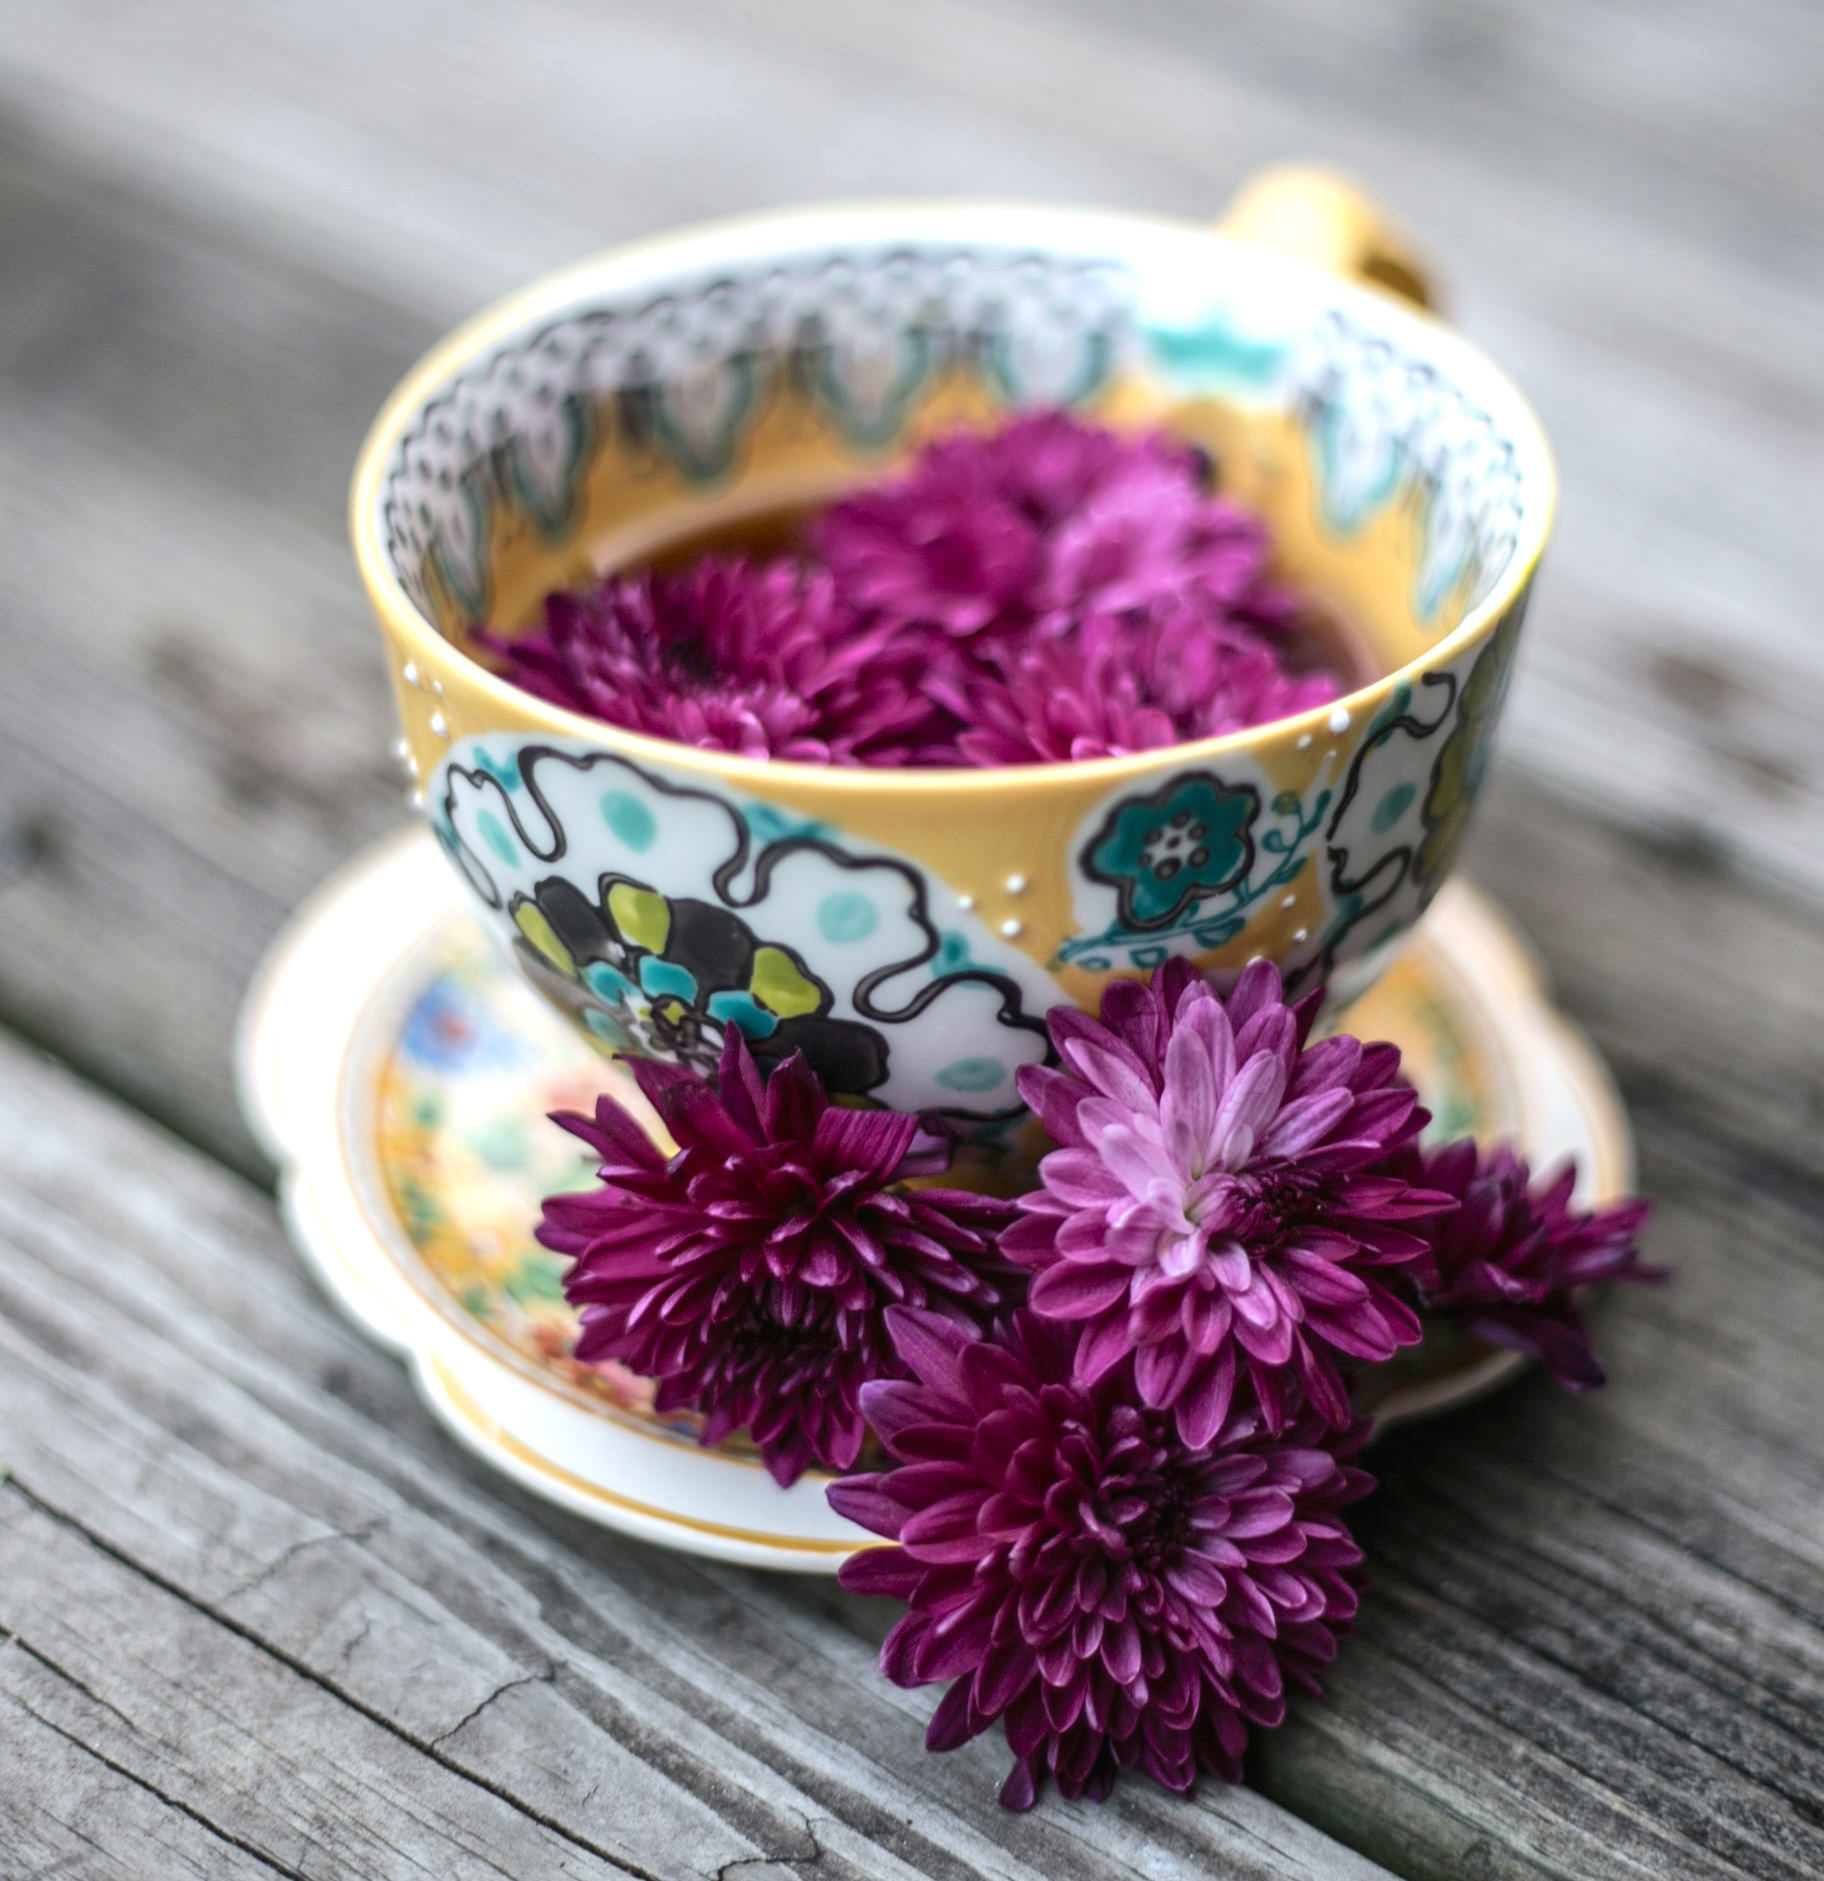 Чай с цветами